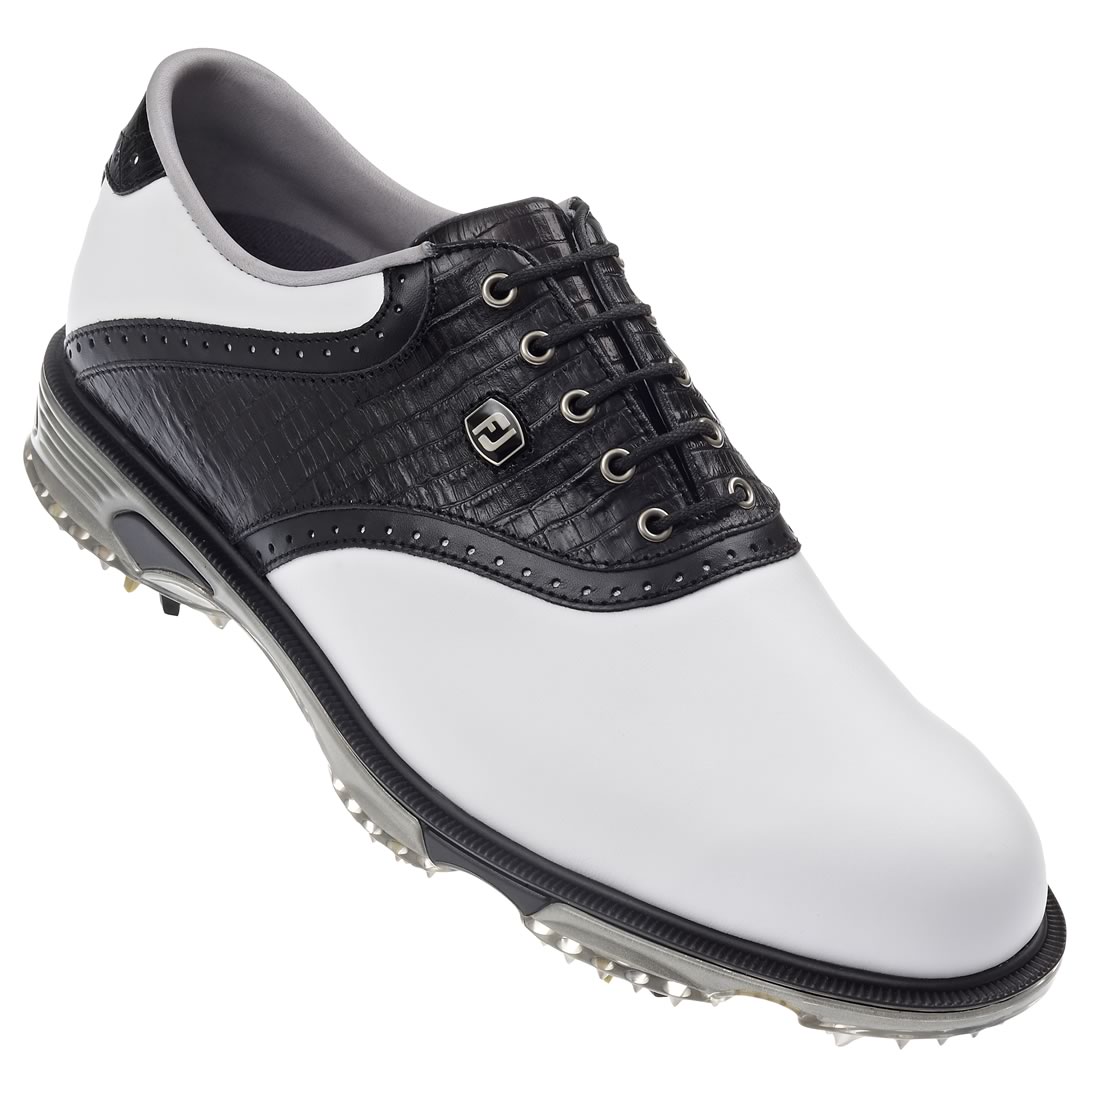 FootJoy Dryjoys Tour Golf Shoes White/Black #53668